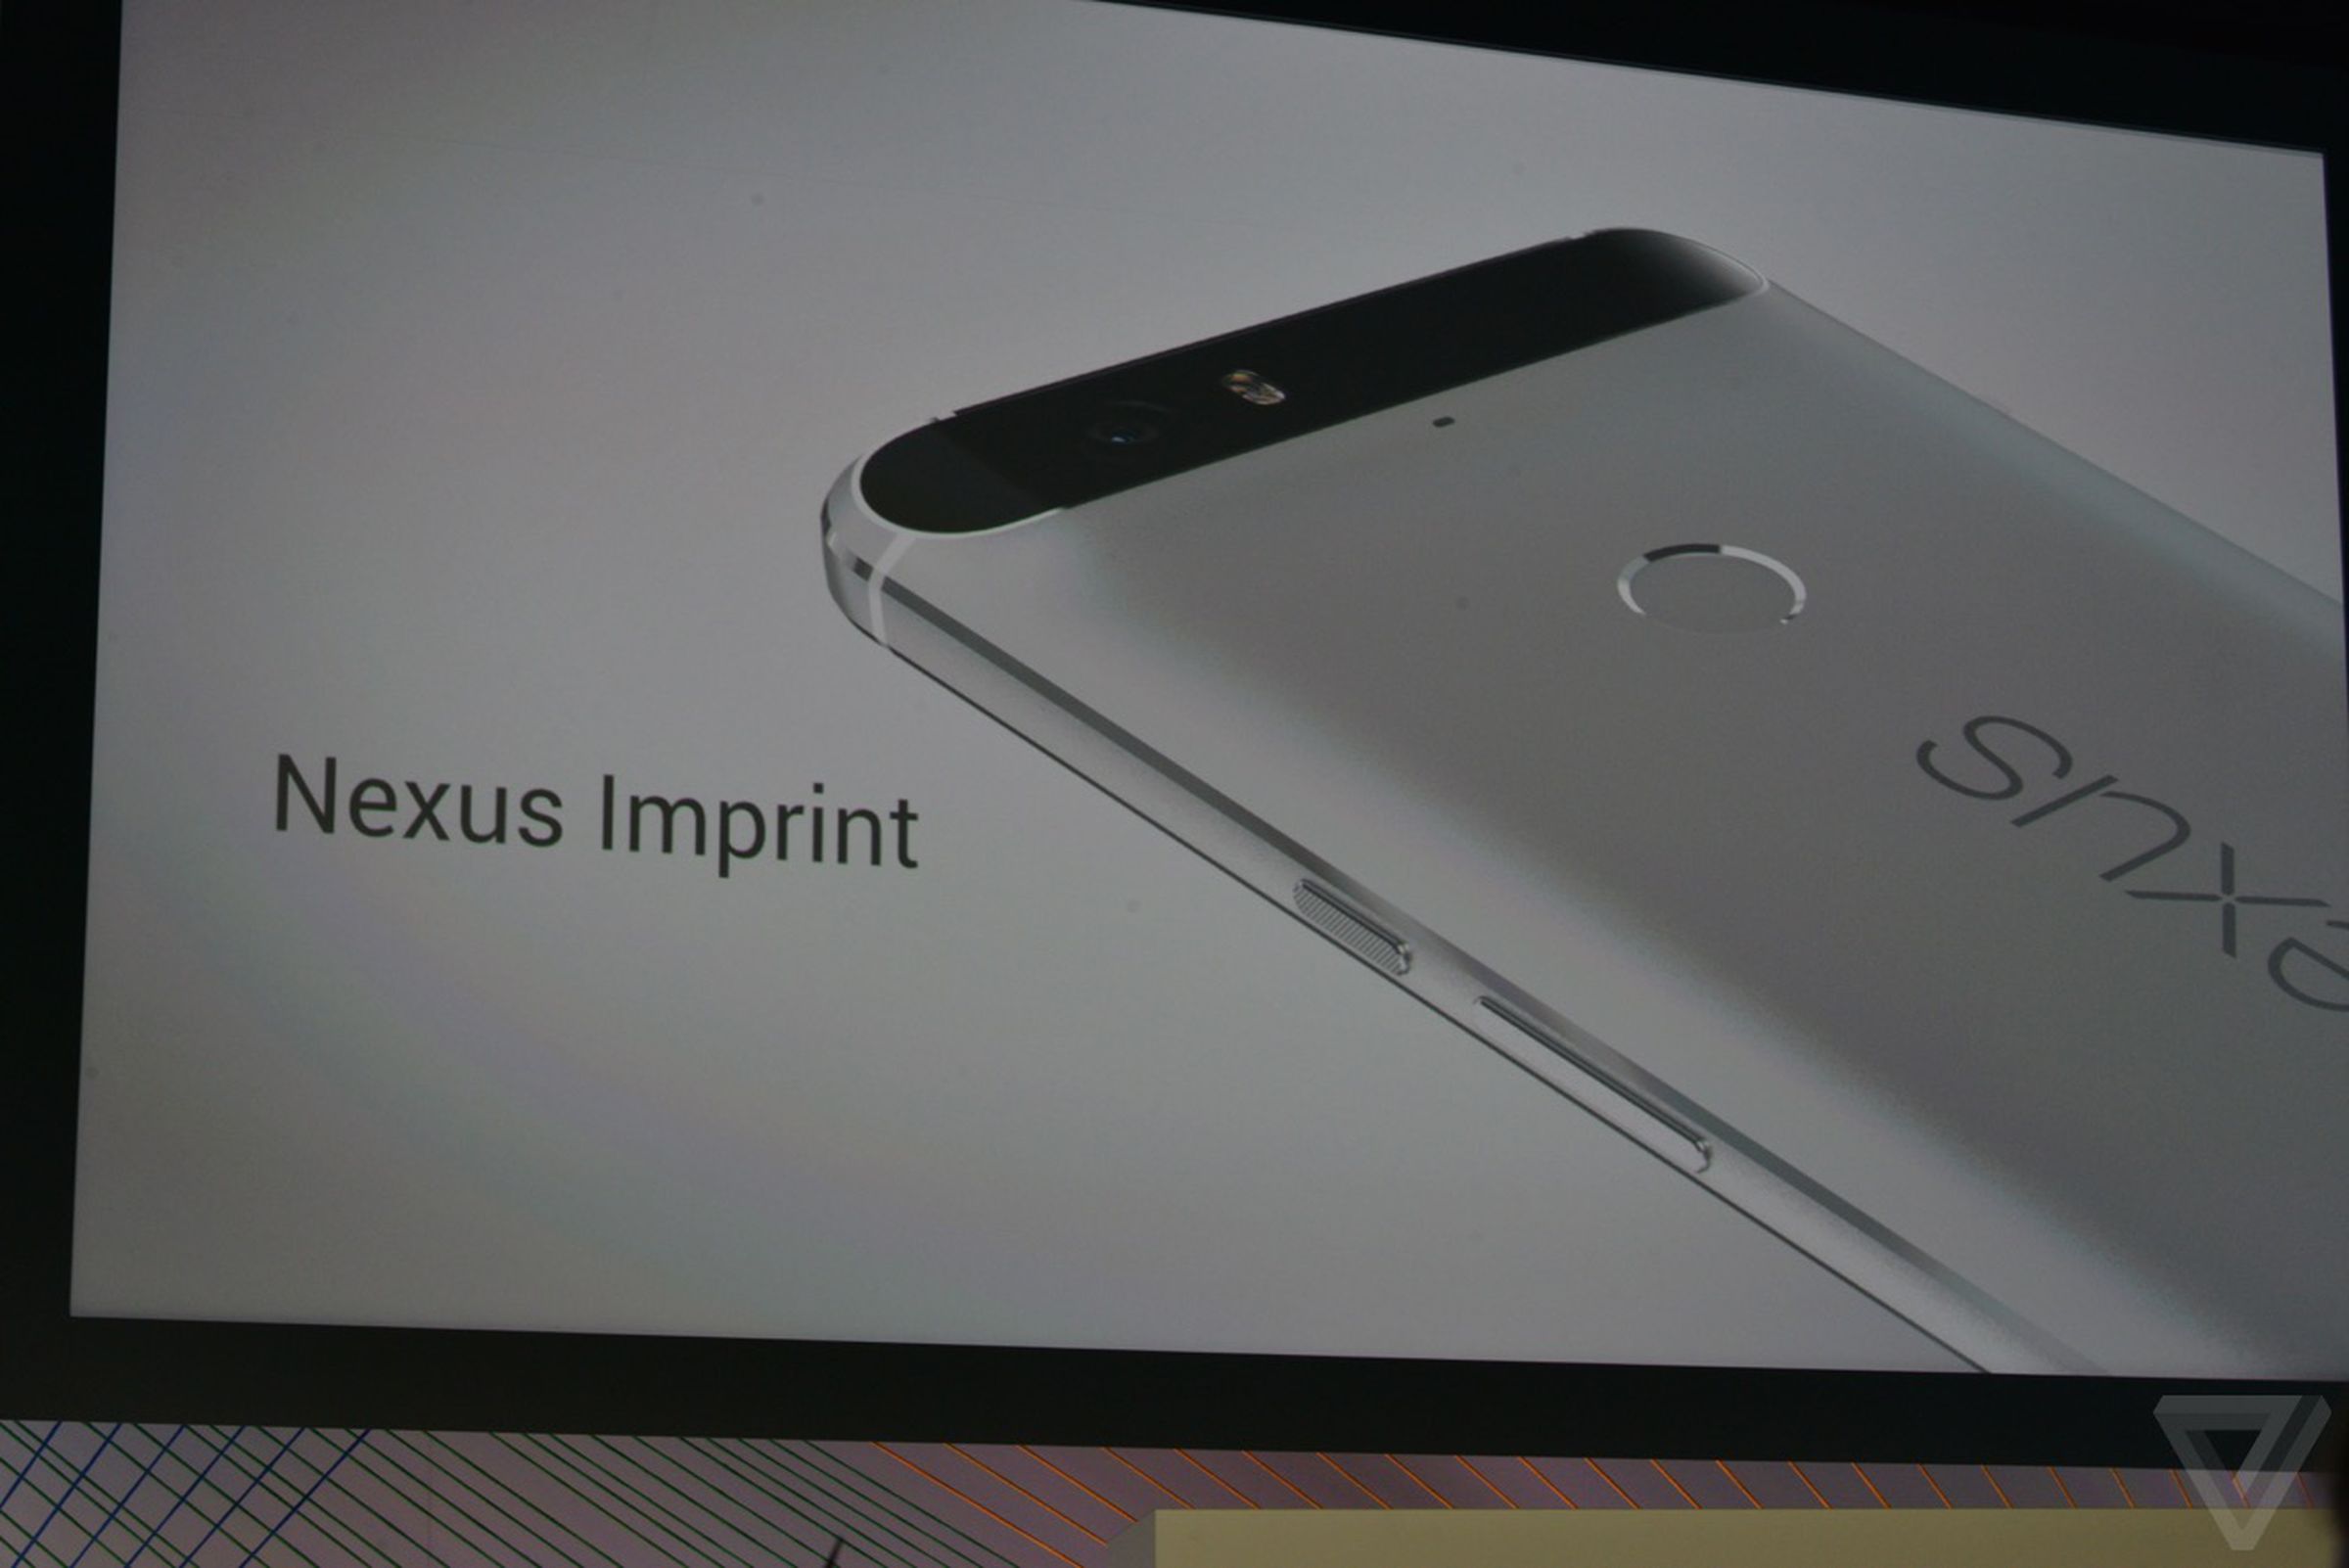 Nexus 6P in photos